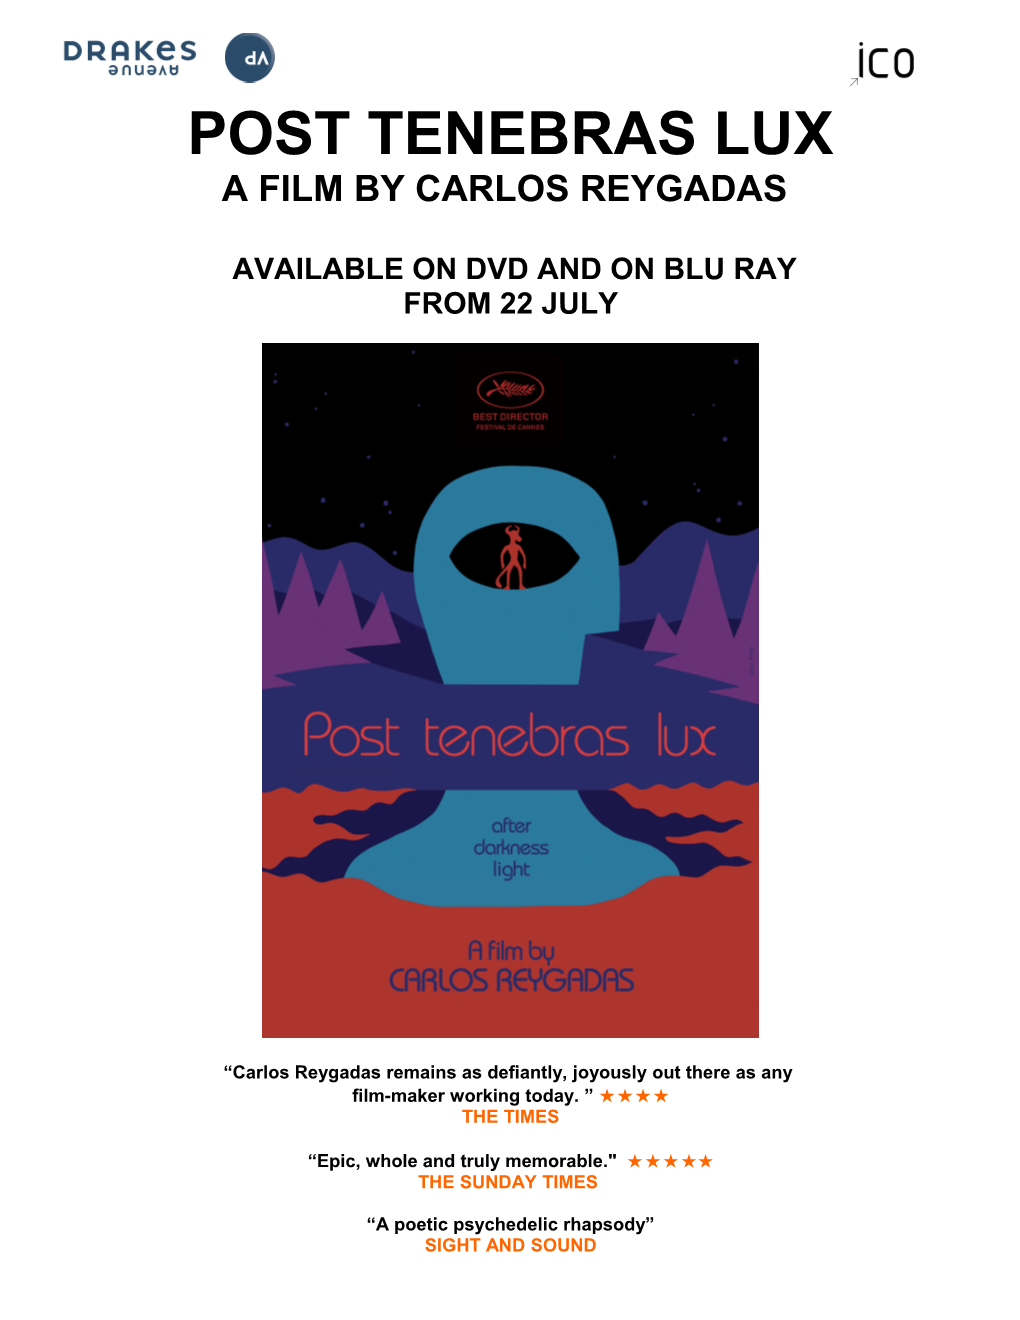 A Film by Carlos Reygadas